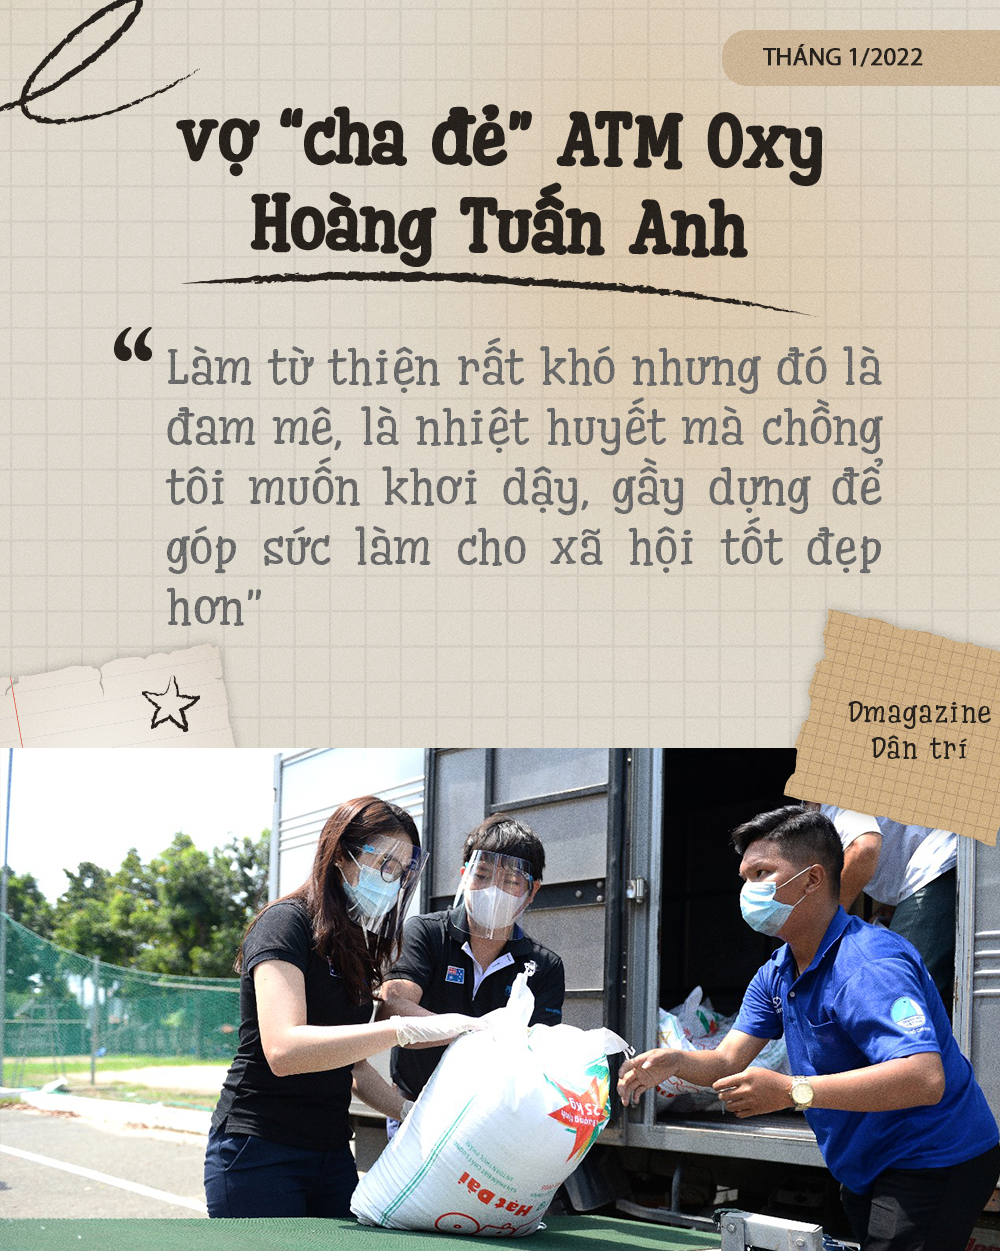 Bí mật về một hậu phương bỏ tất cả, tới Việt Nam để yêu cha đẻ ATM Oxy - 7